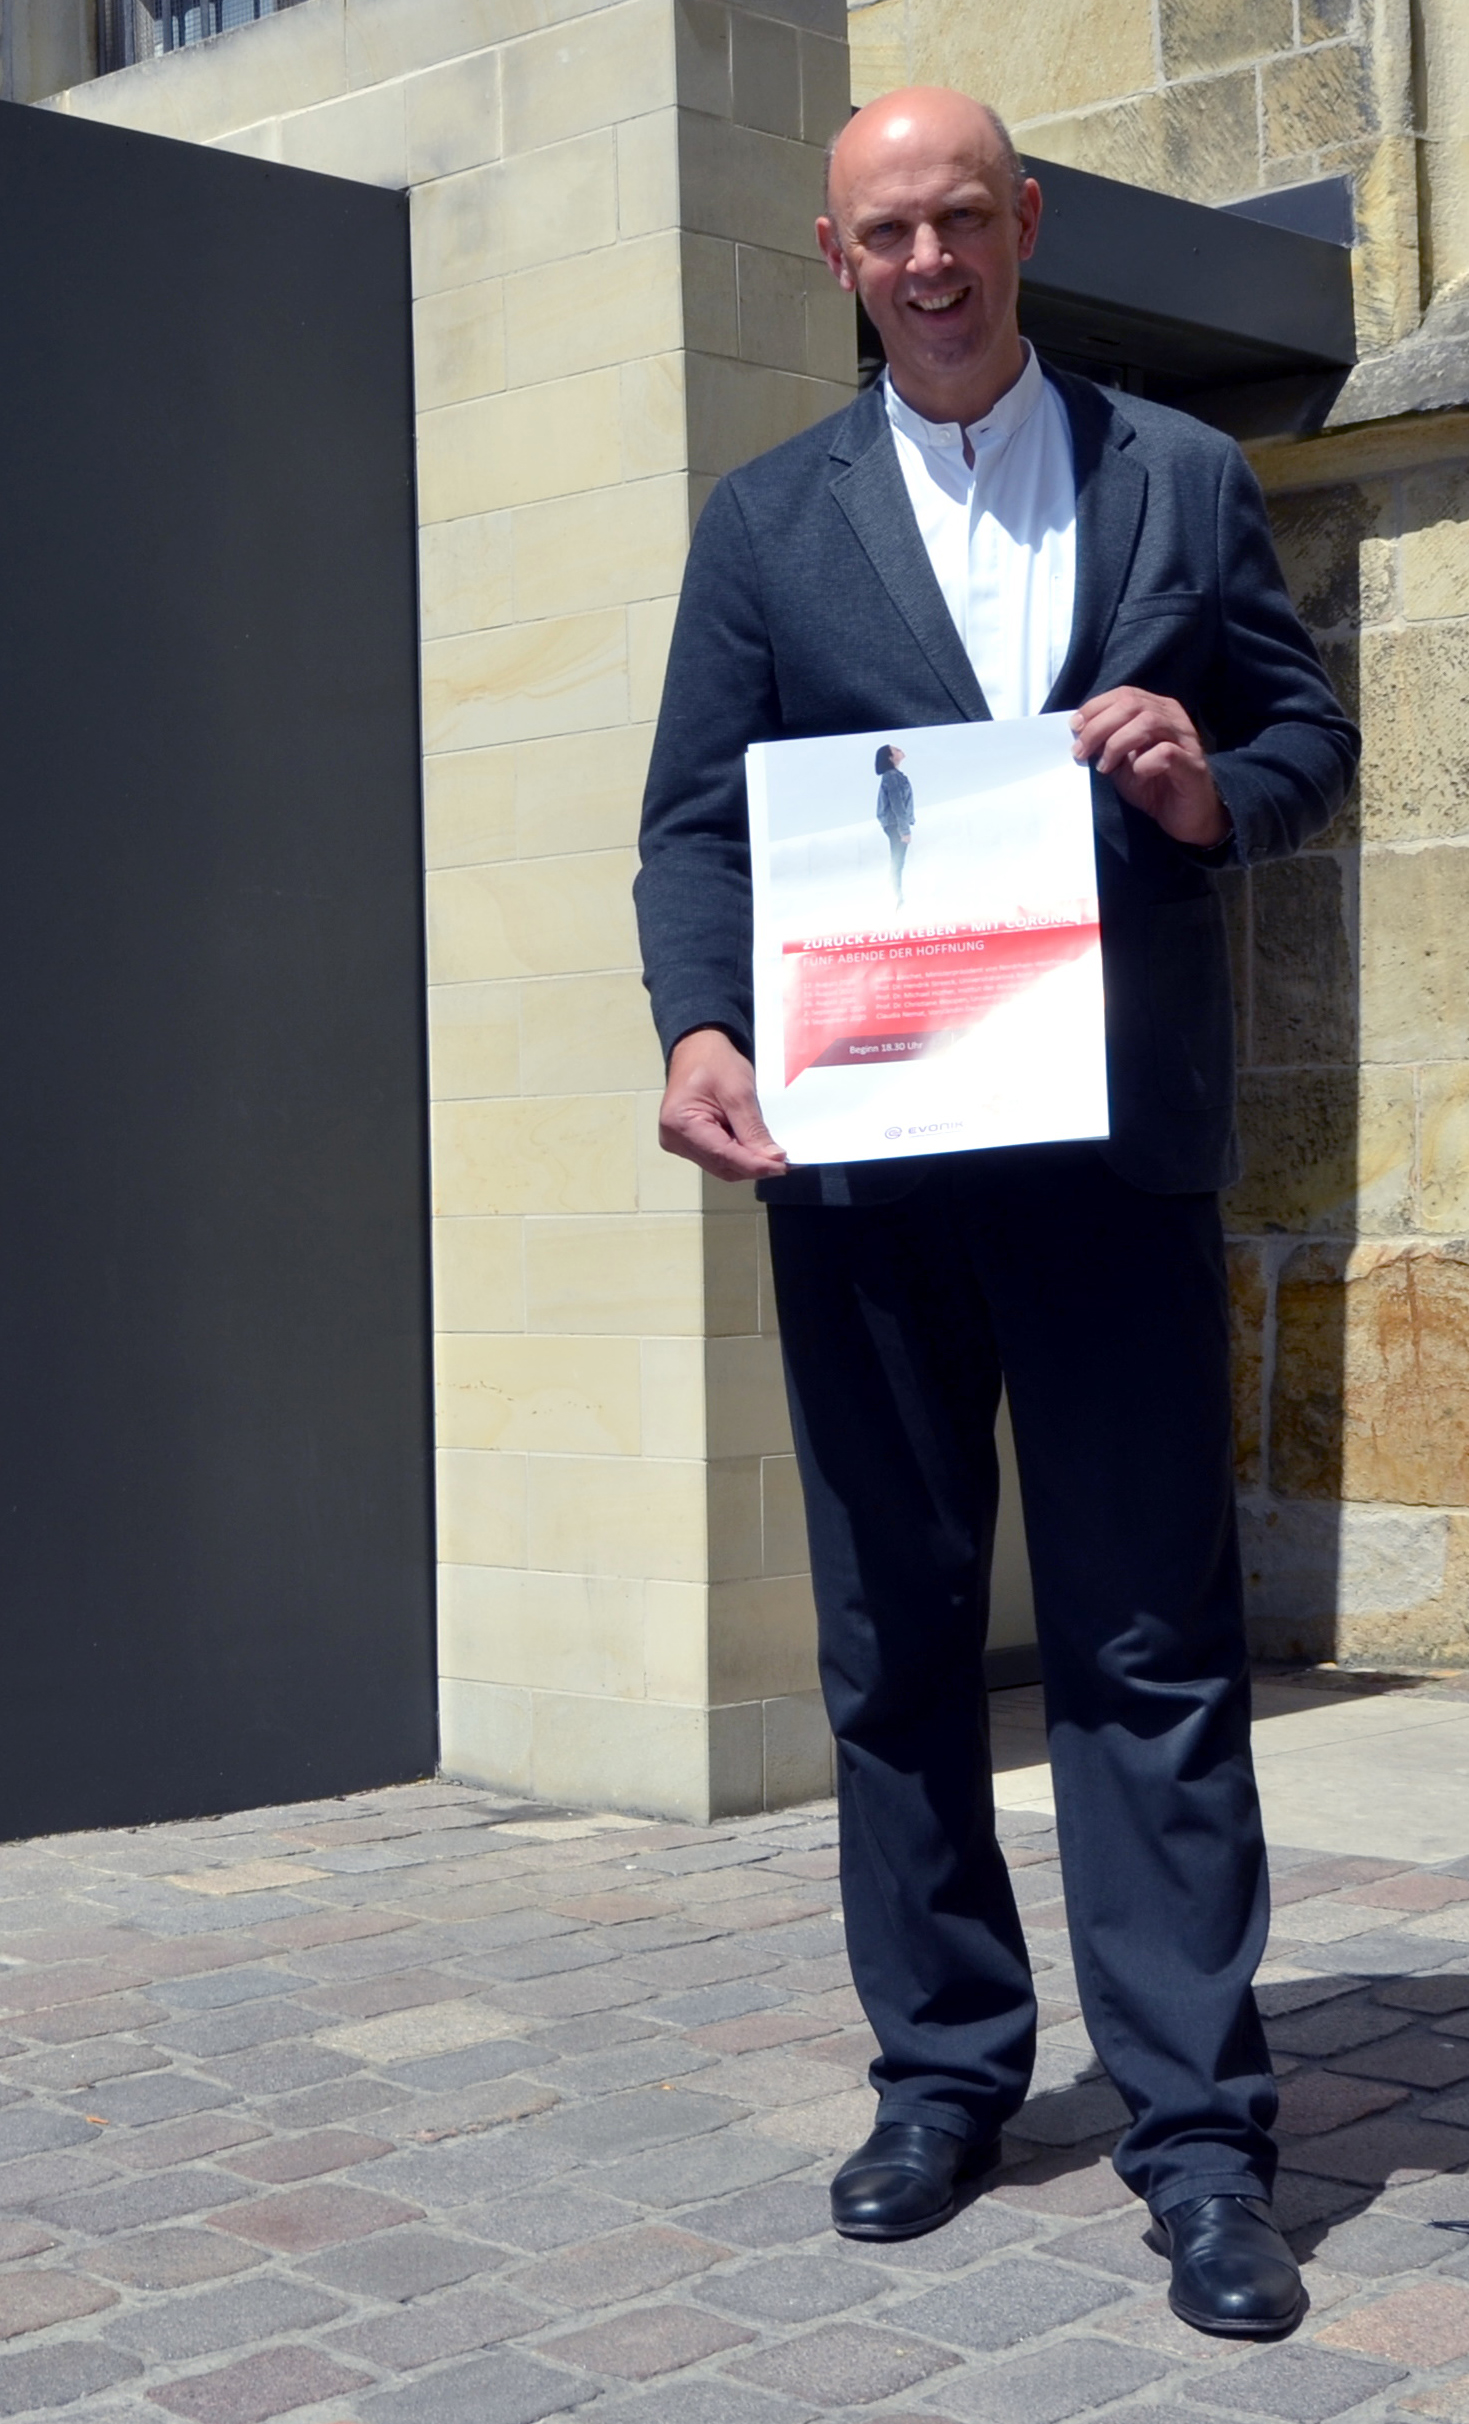 Dompropst Kurt Schulte steht mit einem Plakat der DomGedanken 2020 vor einem Seiteneingang des Doms, dem Uhrenportal.